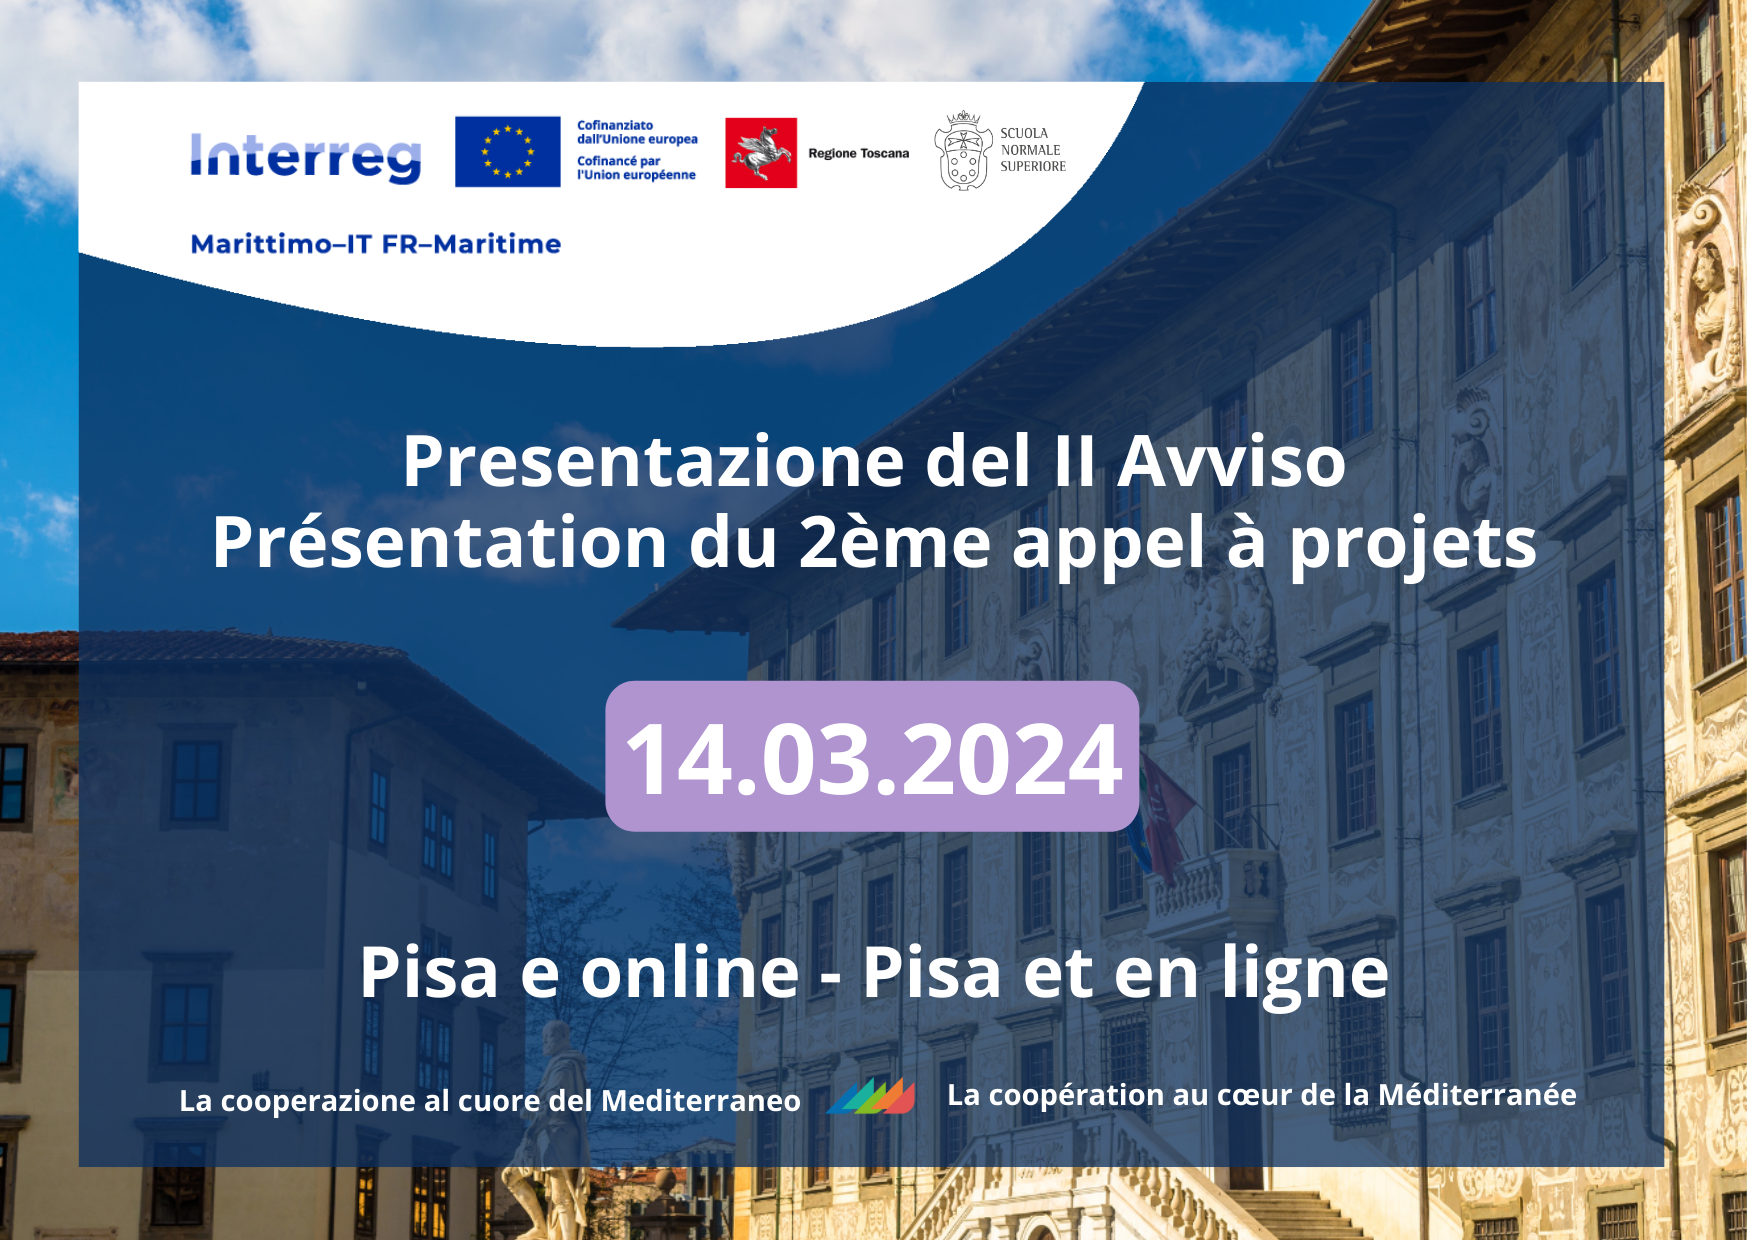 Regione Toscana - Evento di presentazione del II Avviso a Pisa